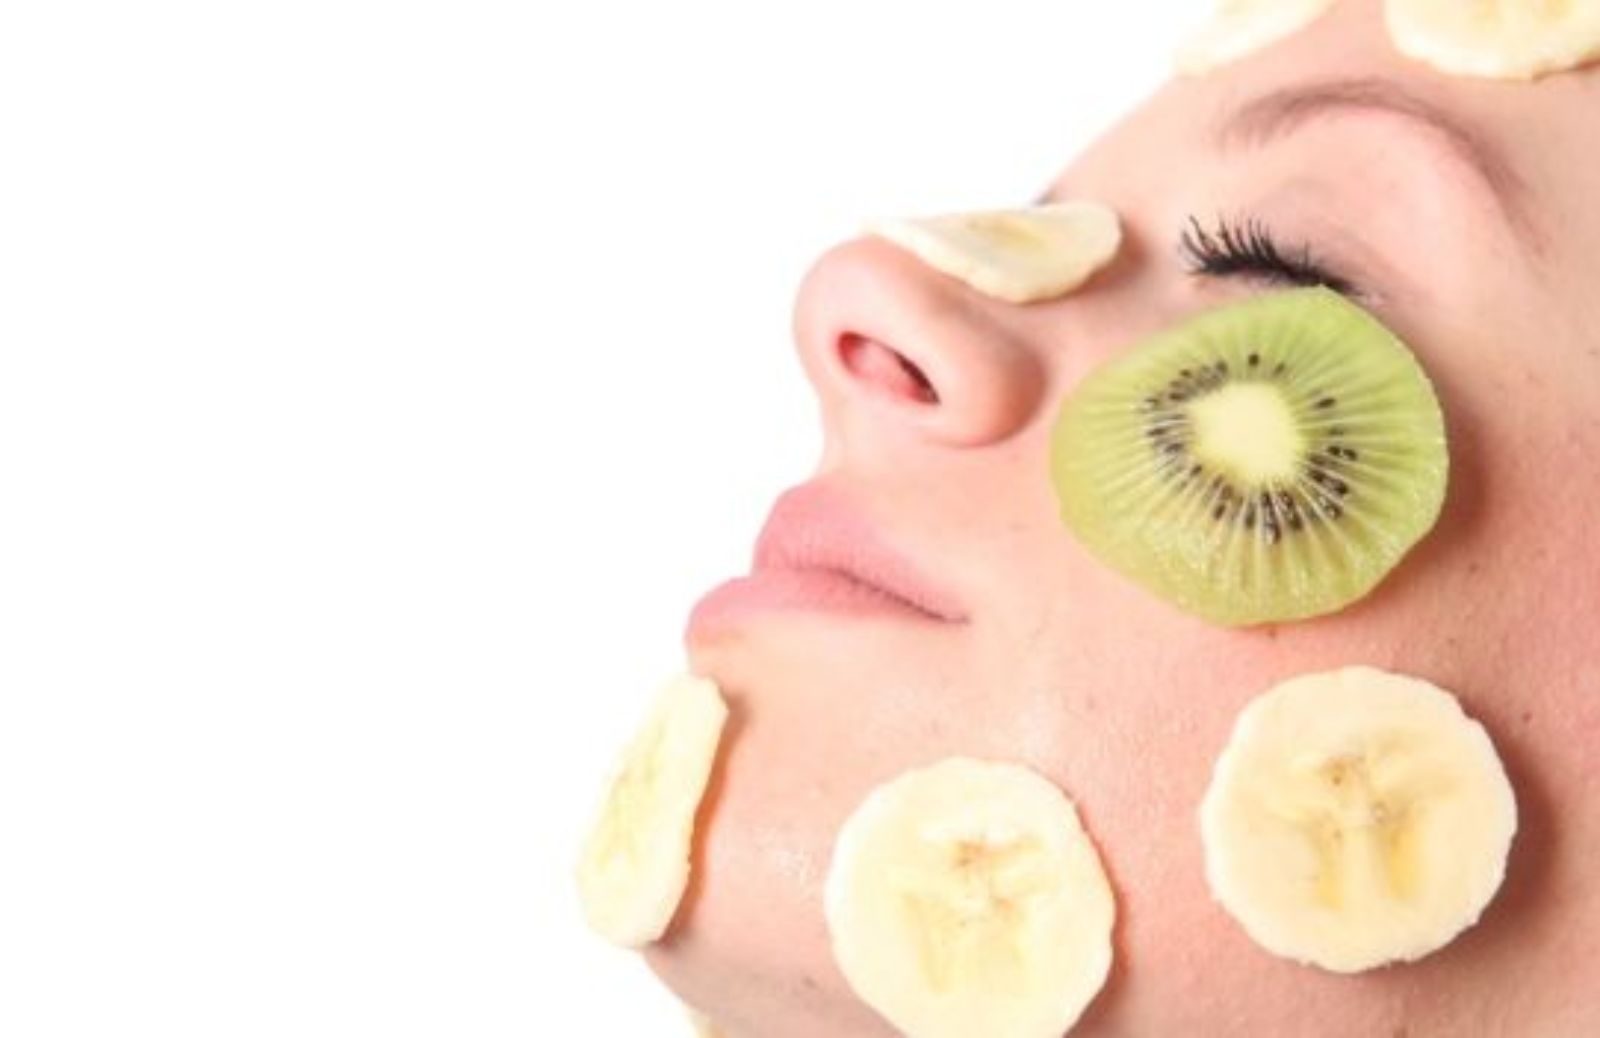 Come minimizzare i pori dilatati: trattamenti fai da te